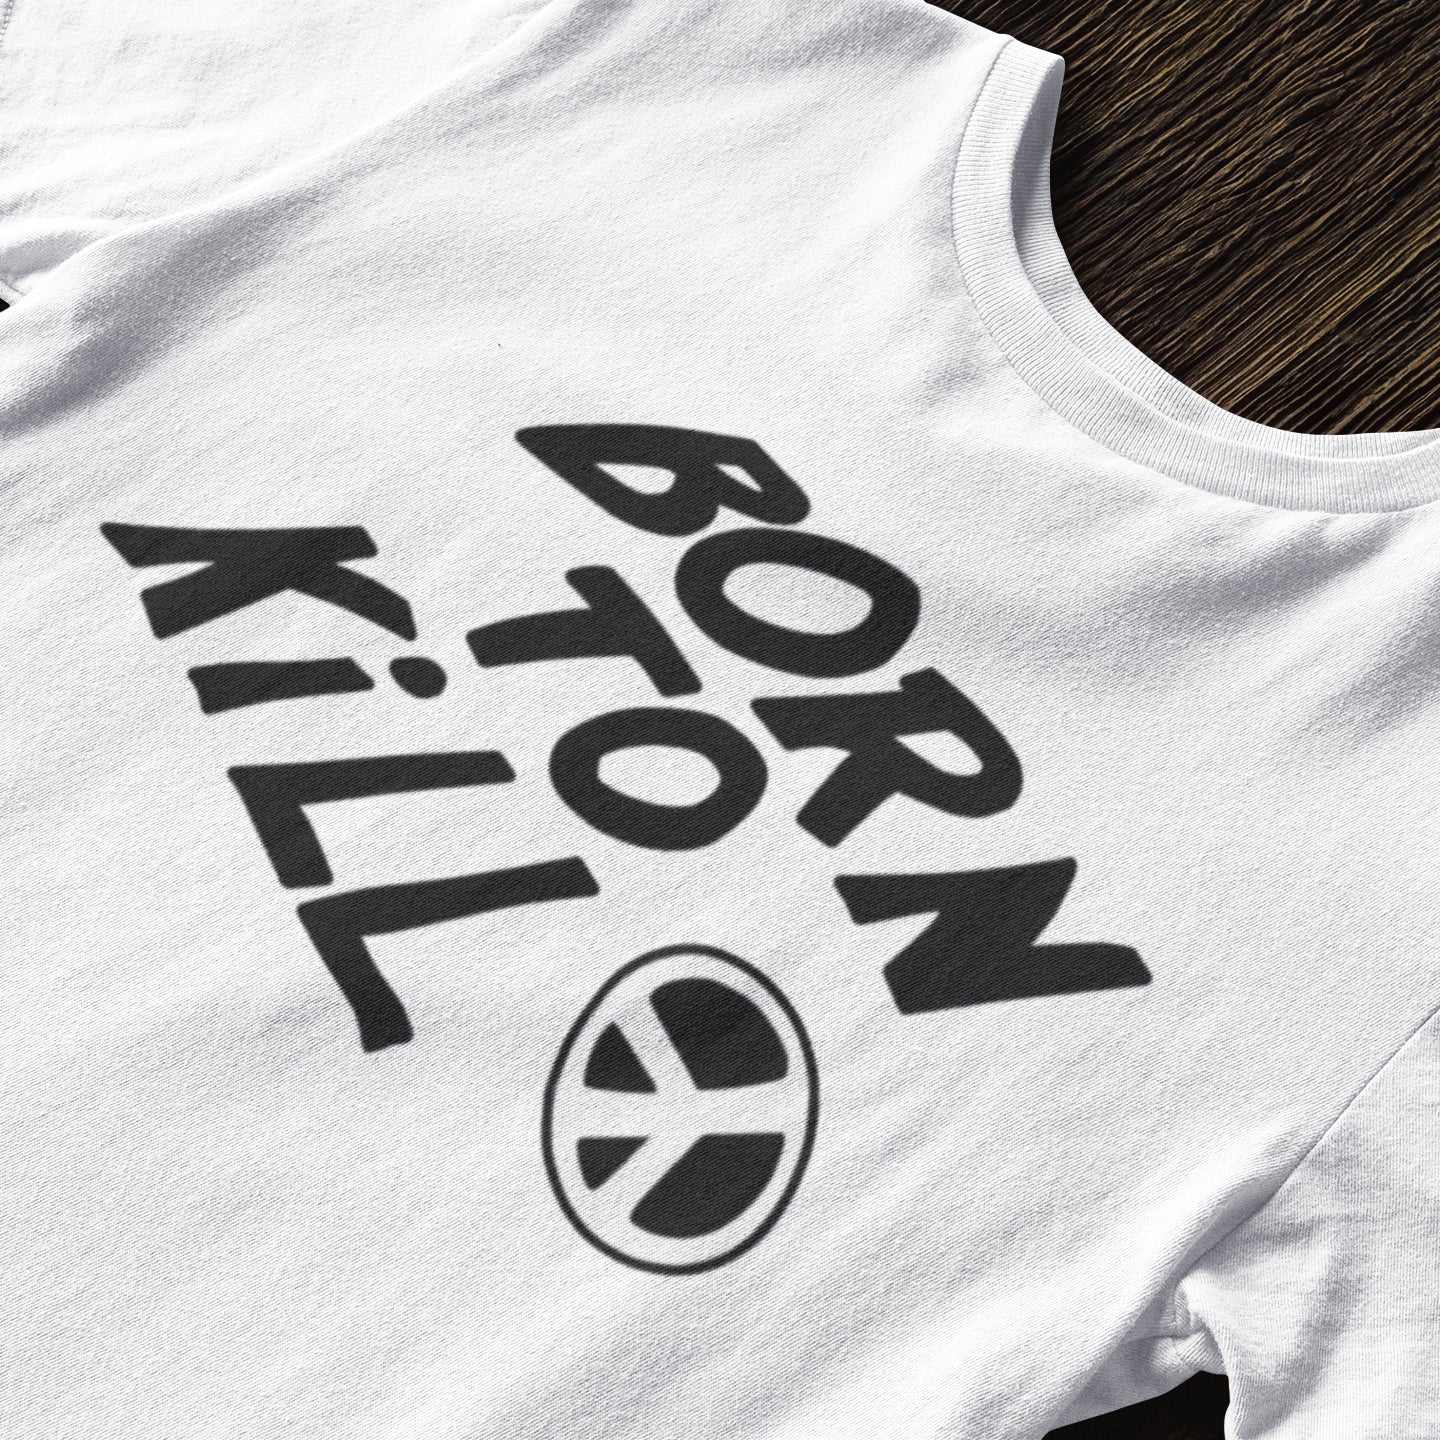 Born to Kill  - T-Shirt